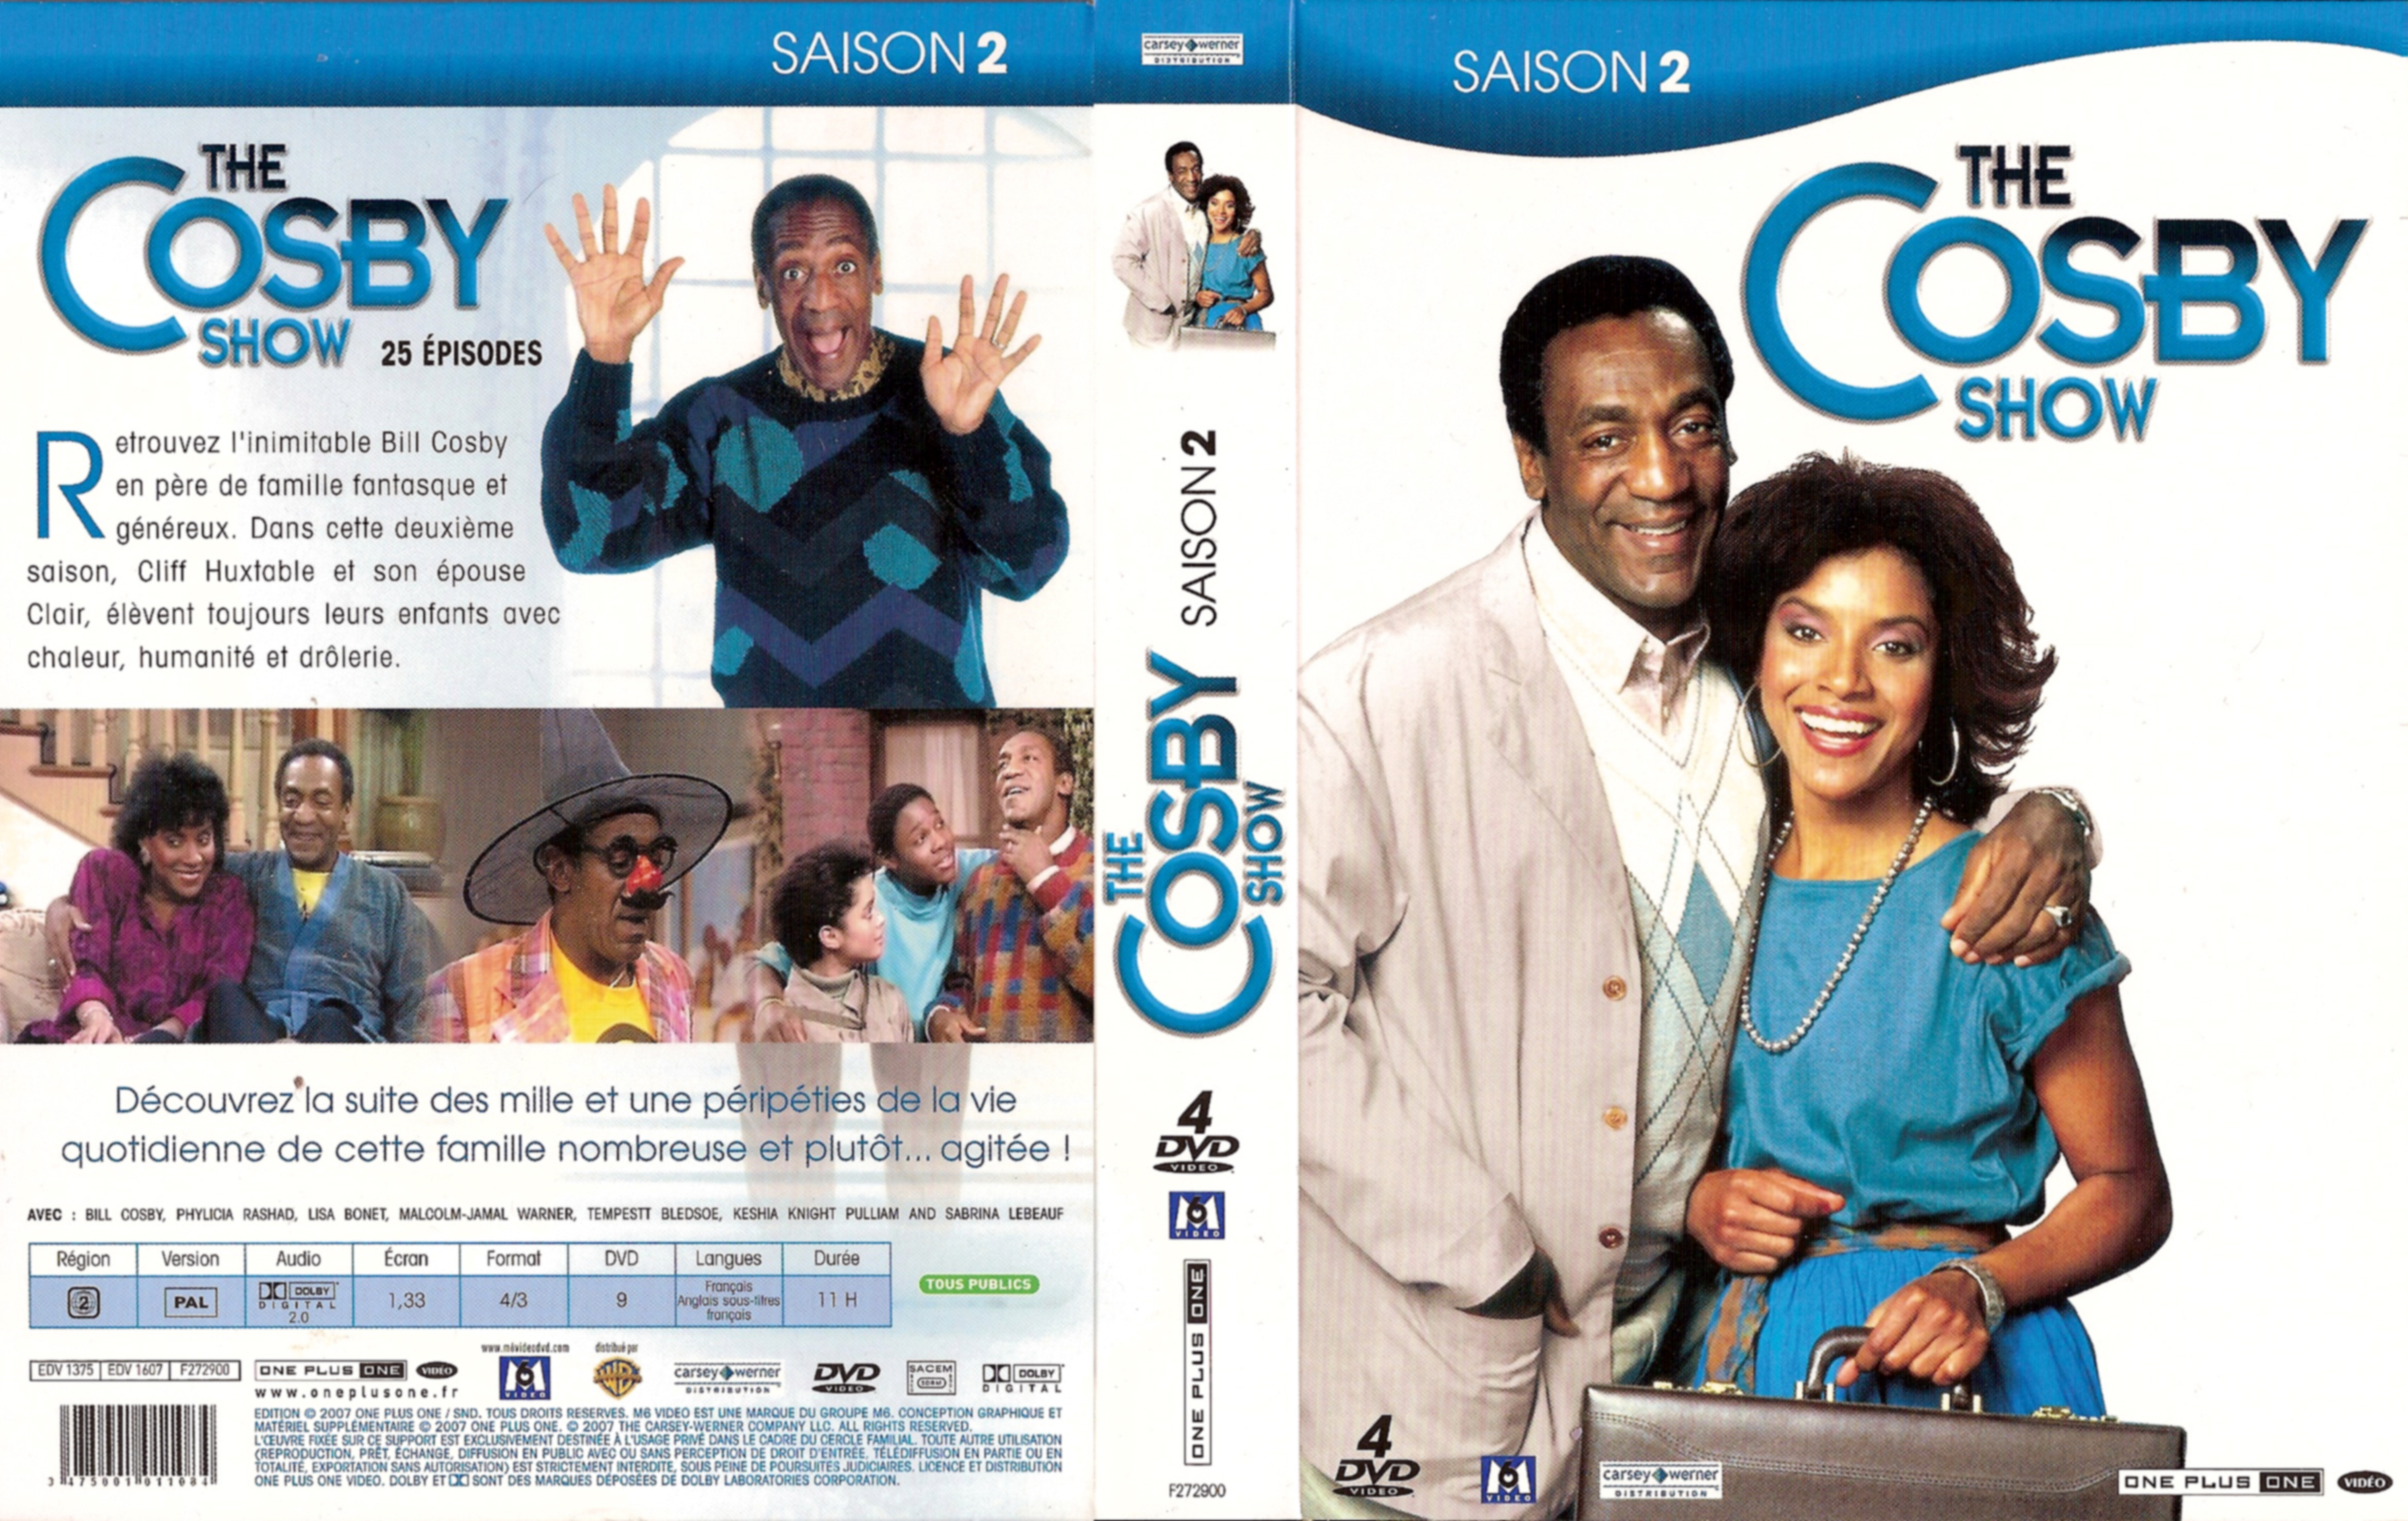 Jaquette DVD The Cosby show Saison 2 COFFRET